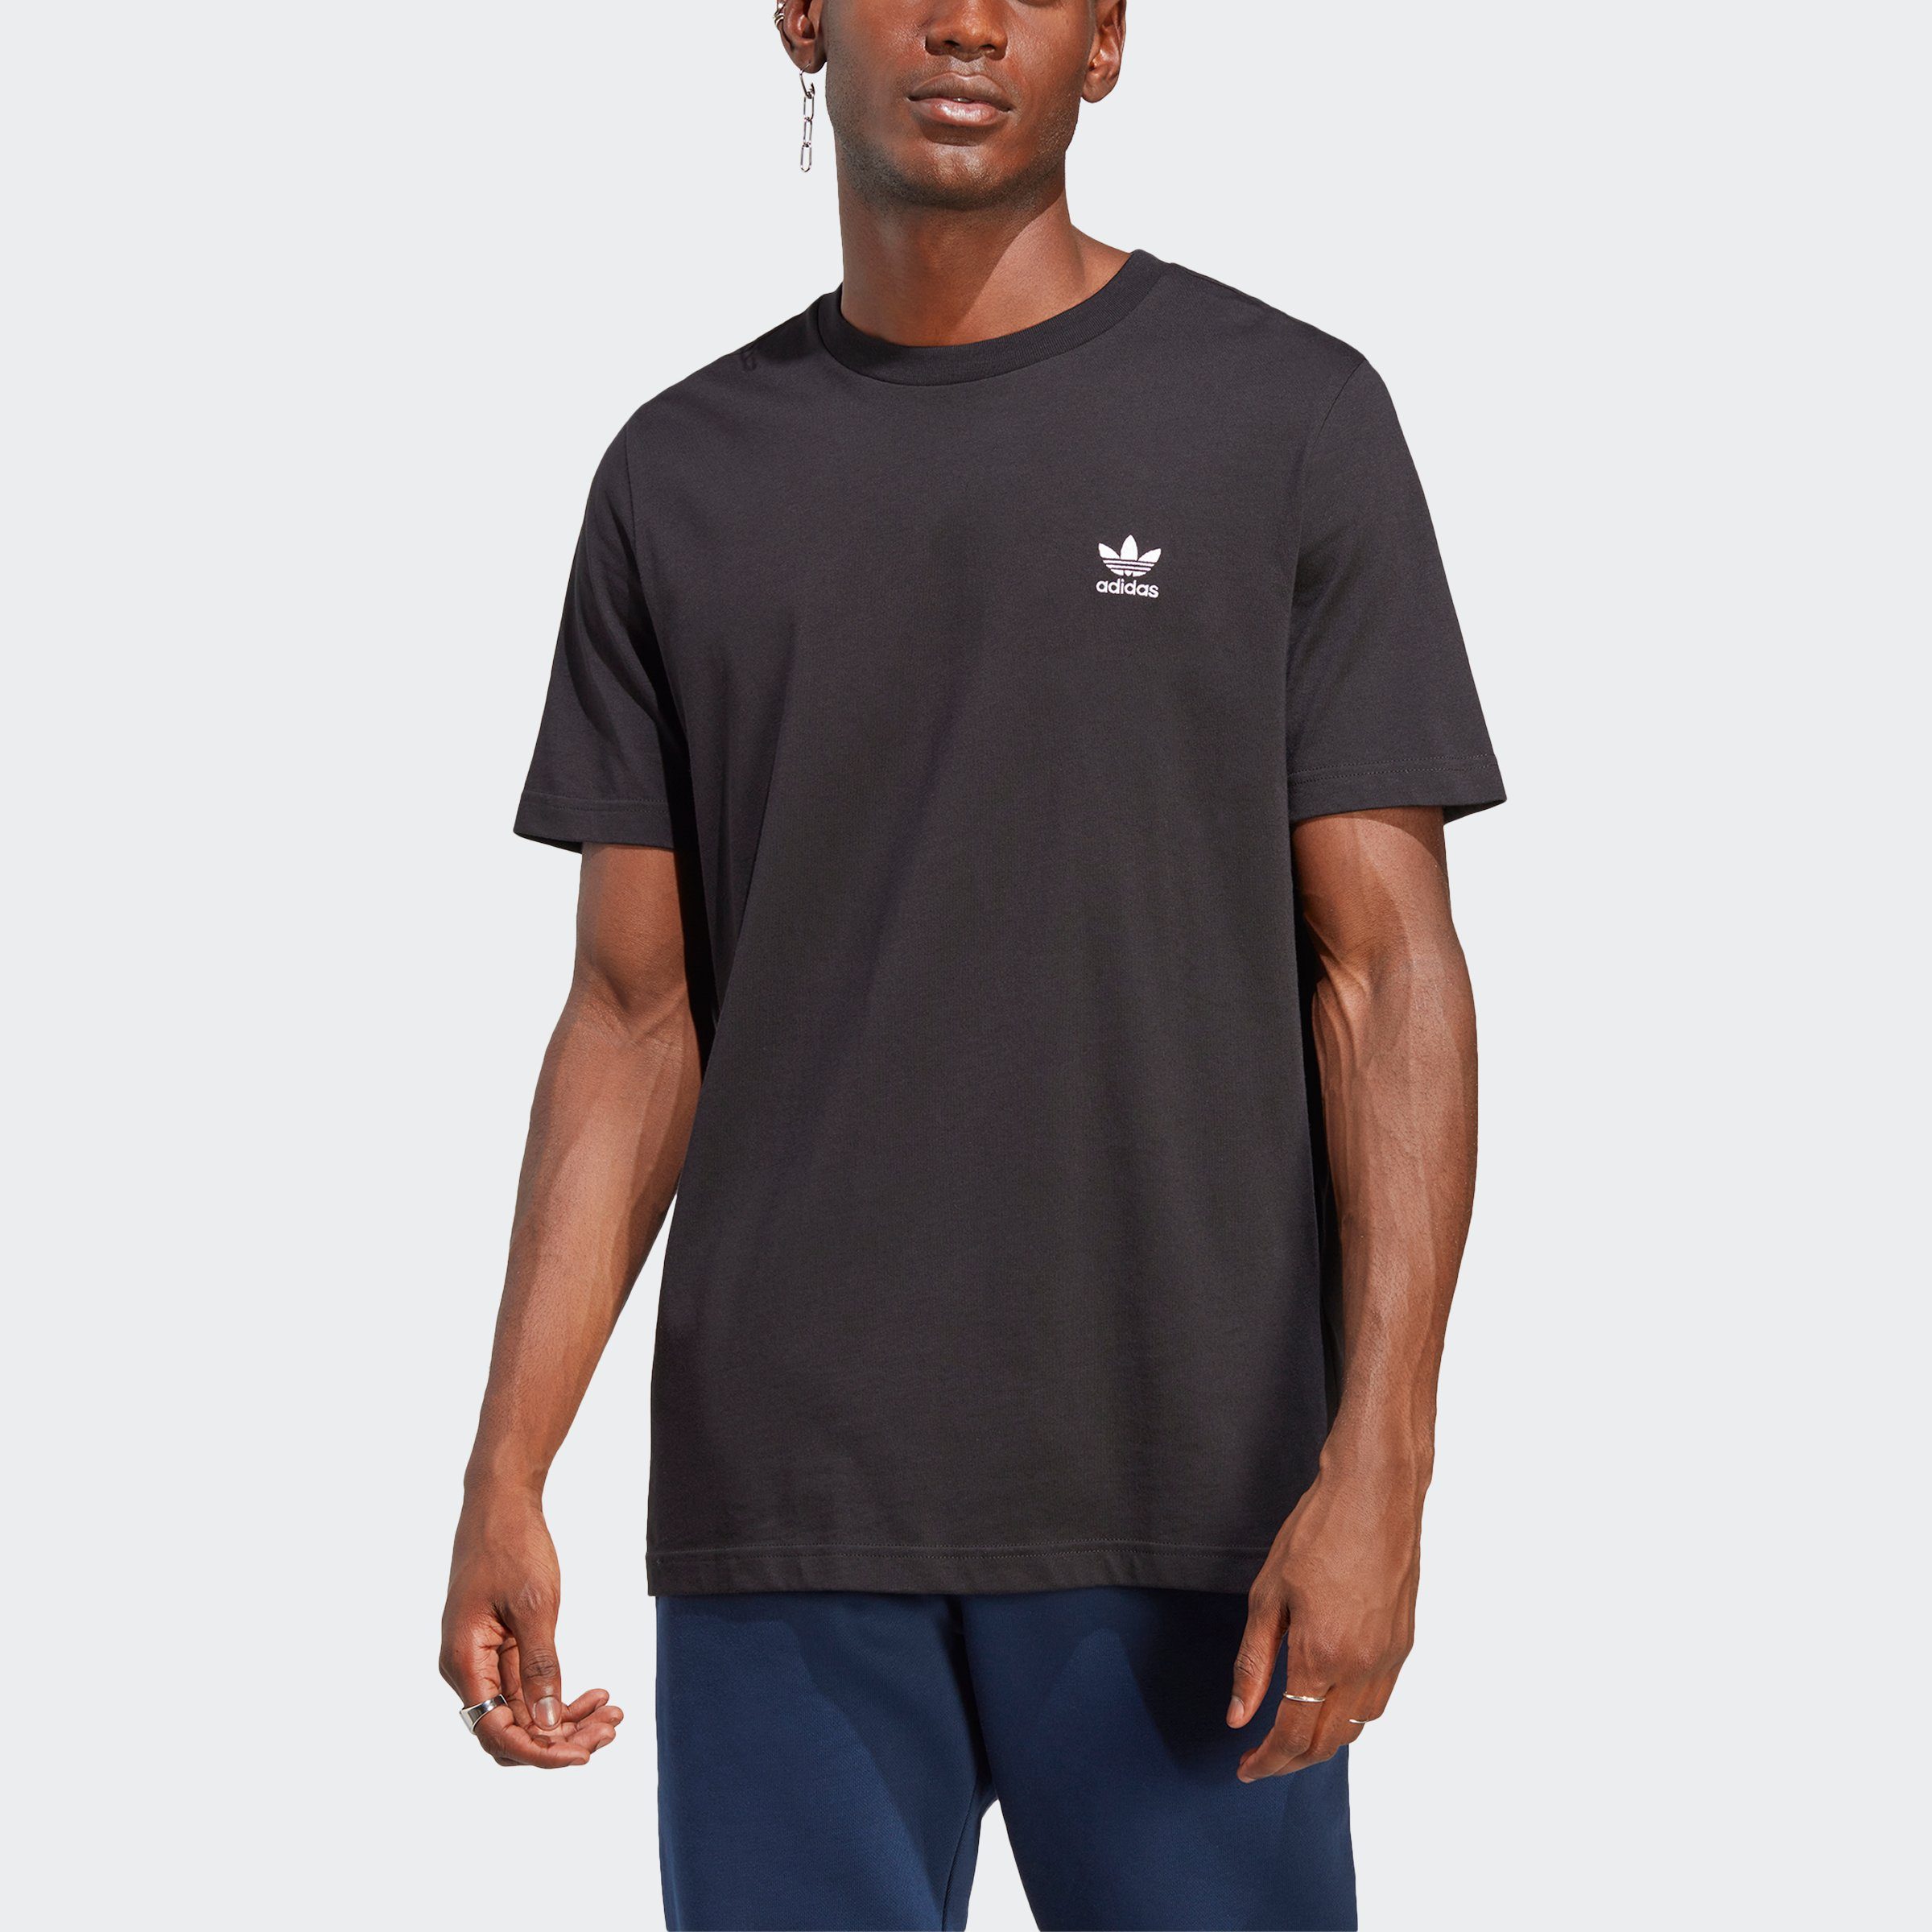 adidas Originals T-Shirt TREFOIL ESSENTIALS, jeden unverzichtbares T-Shirt für Ein